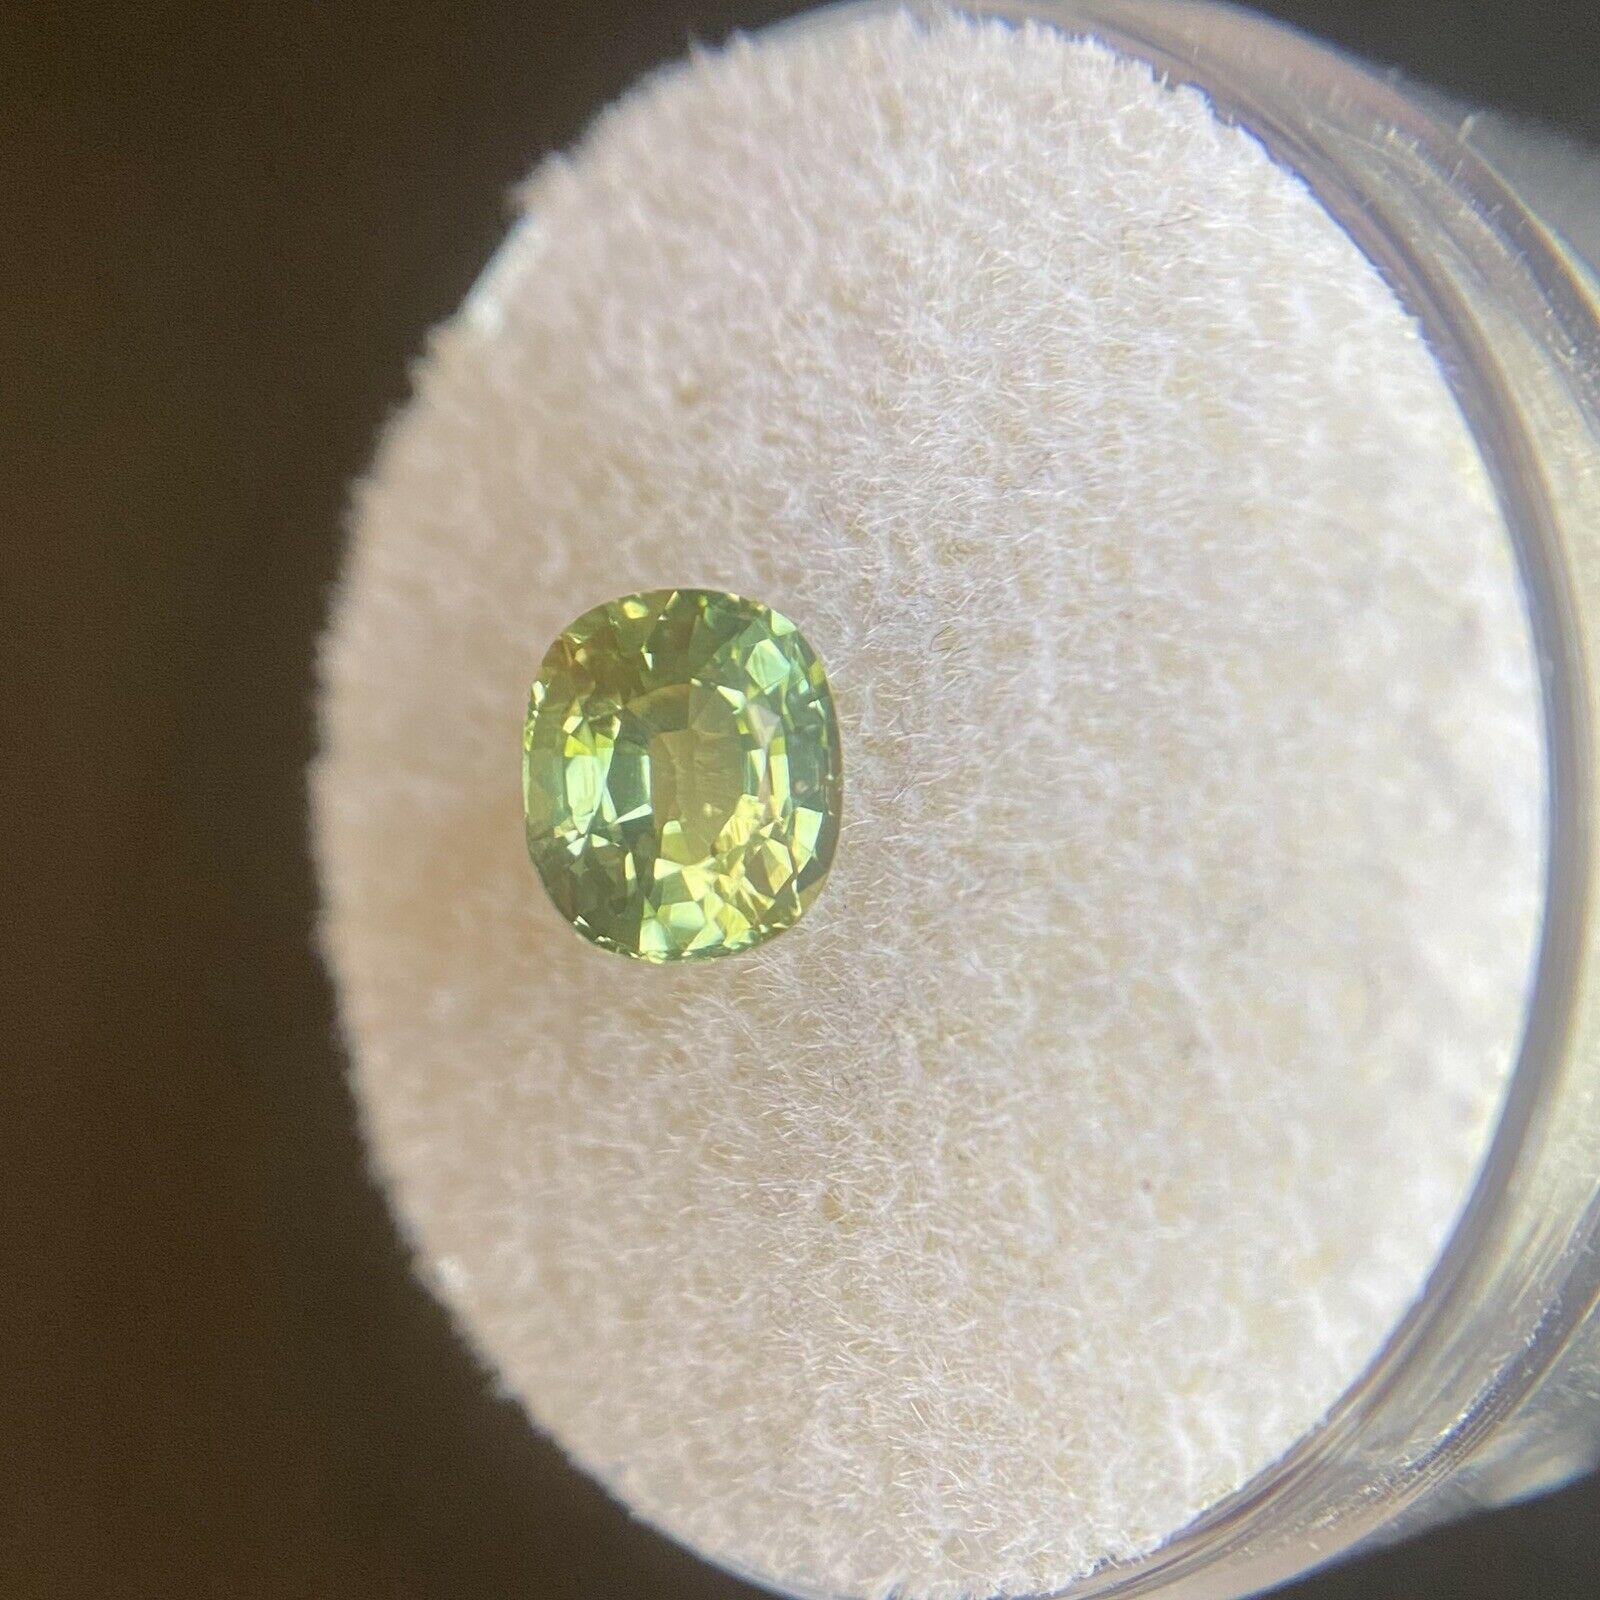 rarest color sapphire